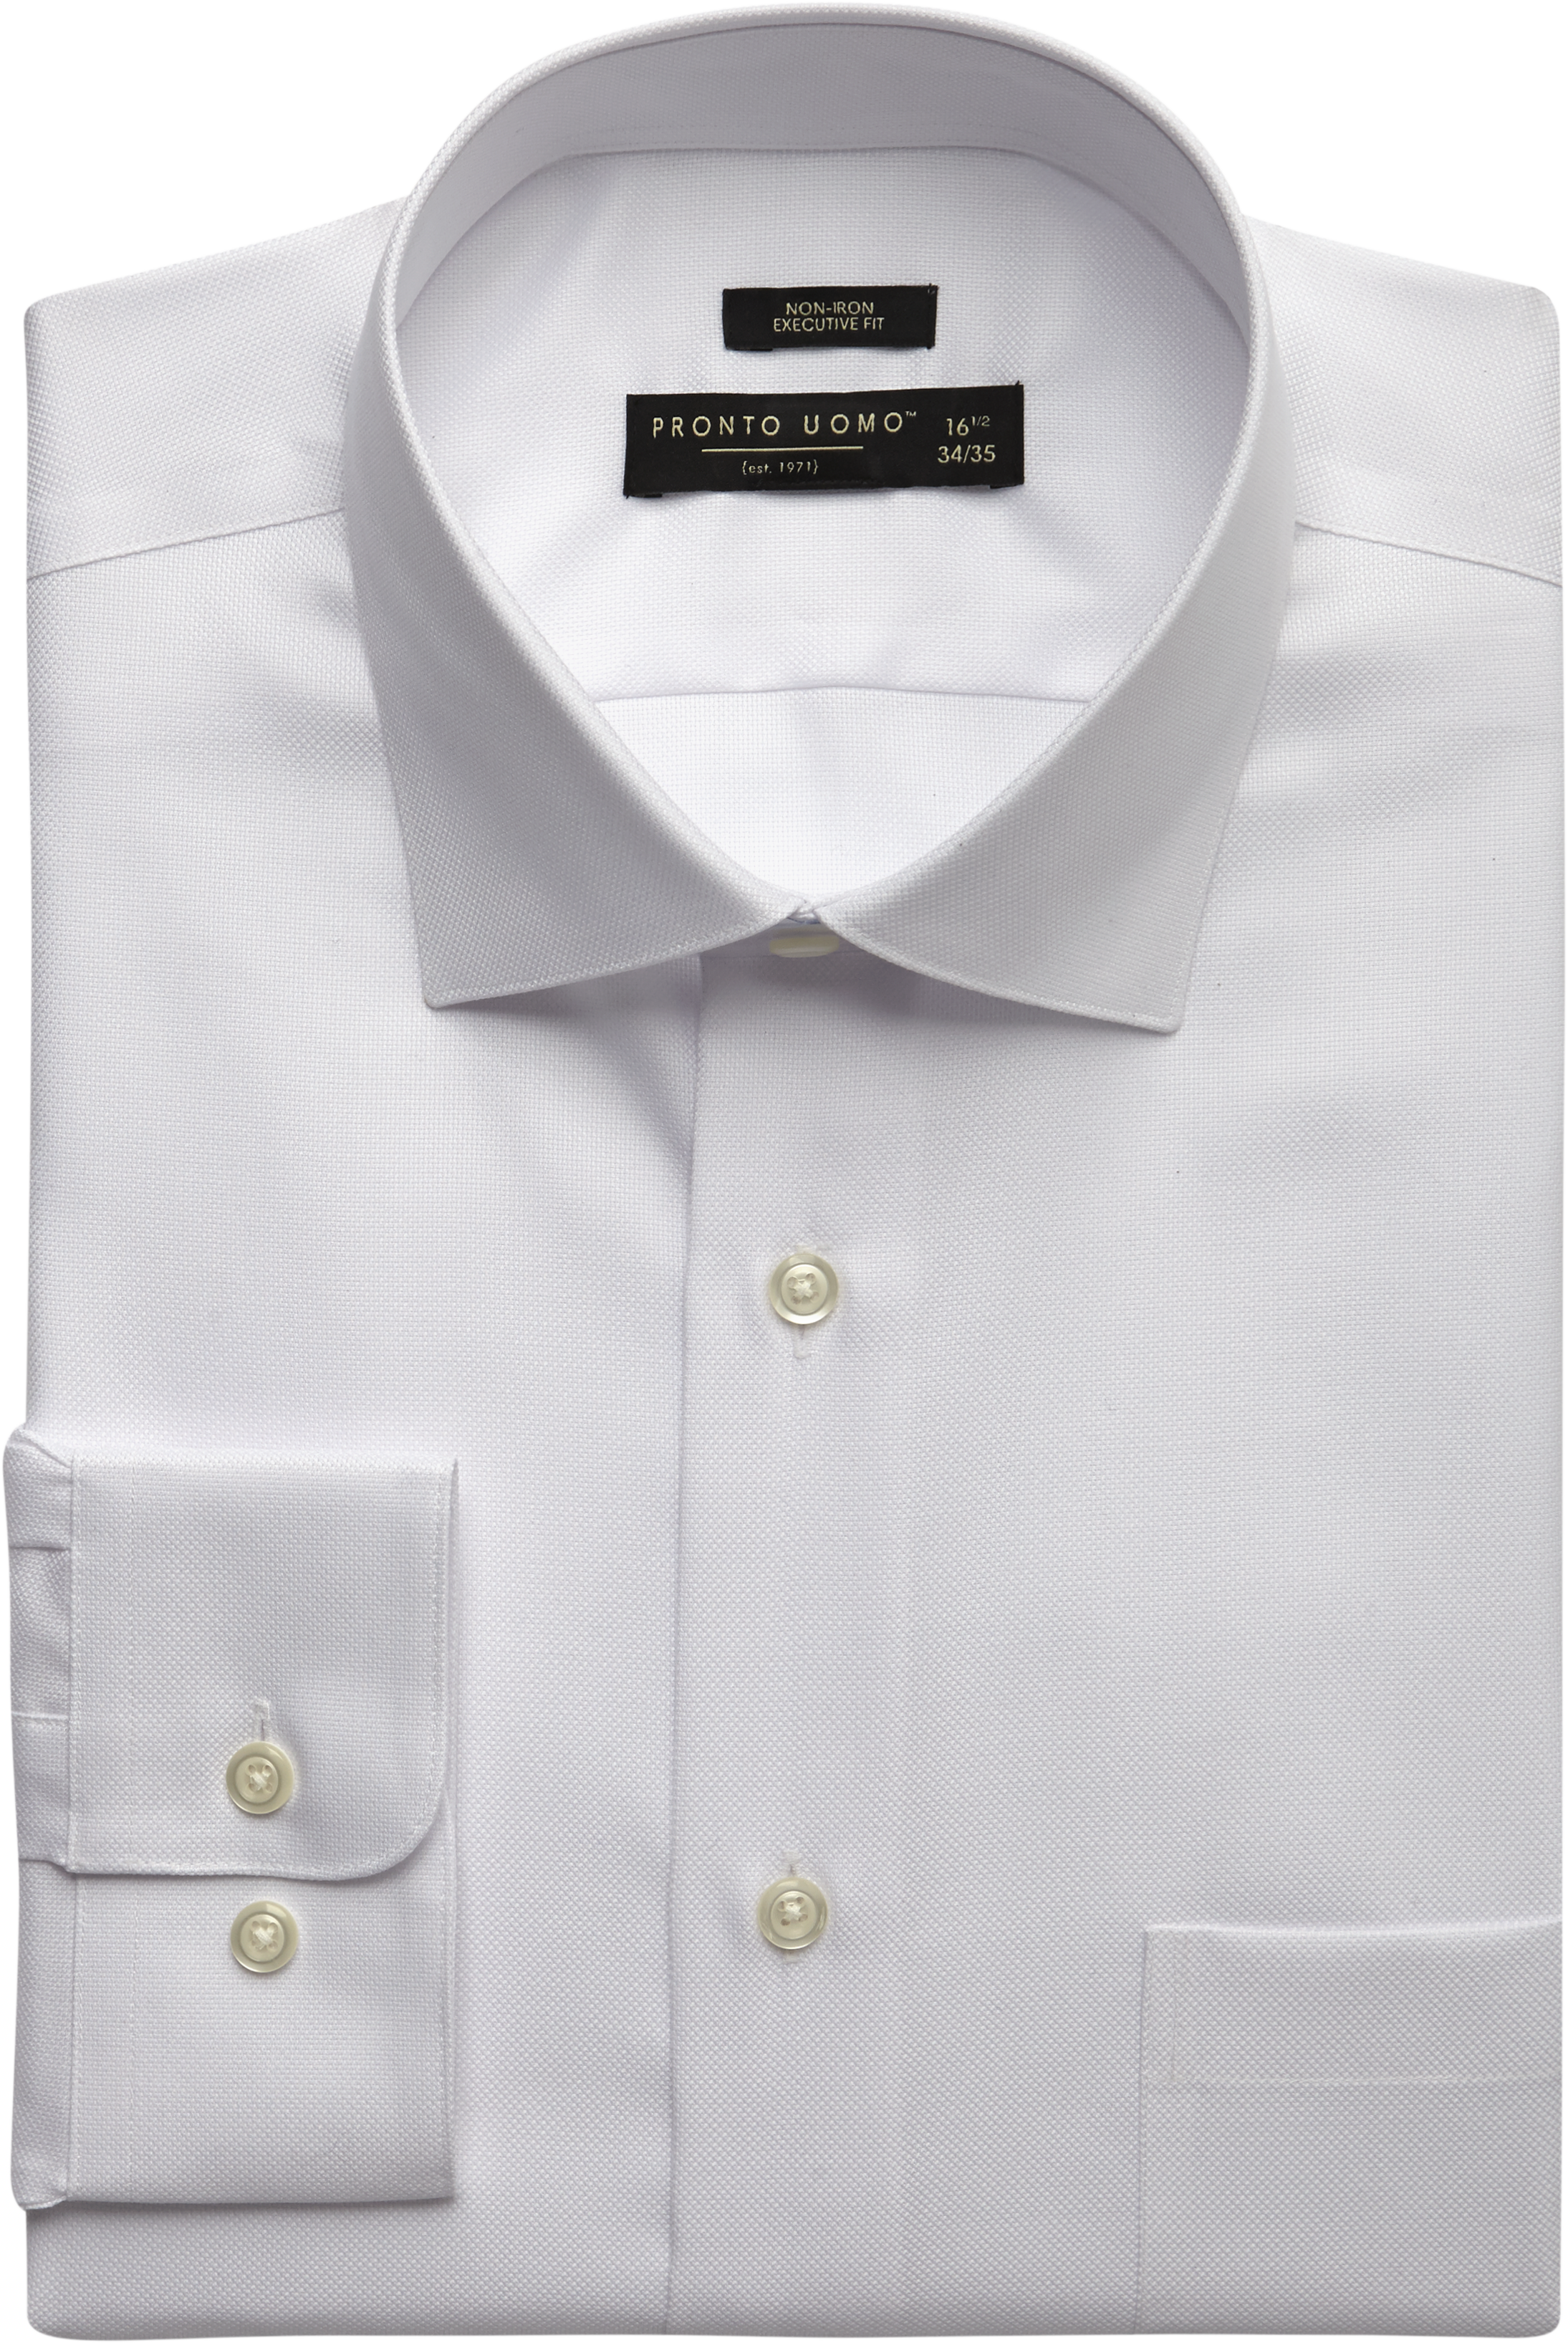 Pronto Uomo White Executive Fit Non-Iron Dress Shirt - Men's | Men's ...